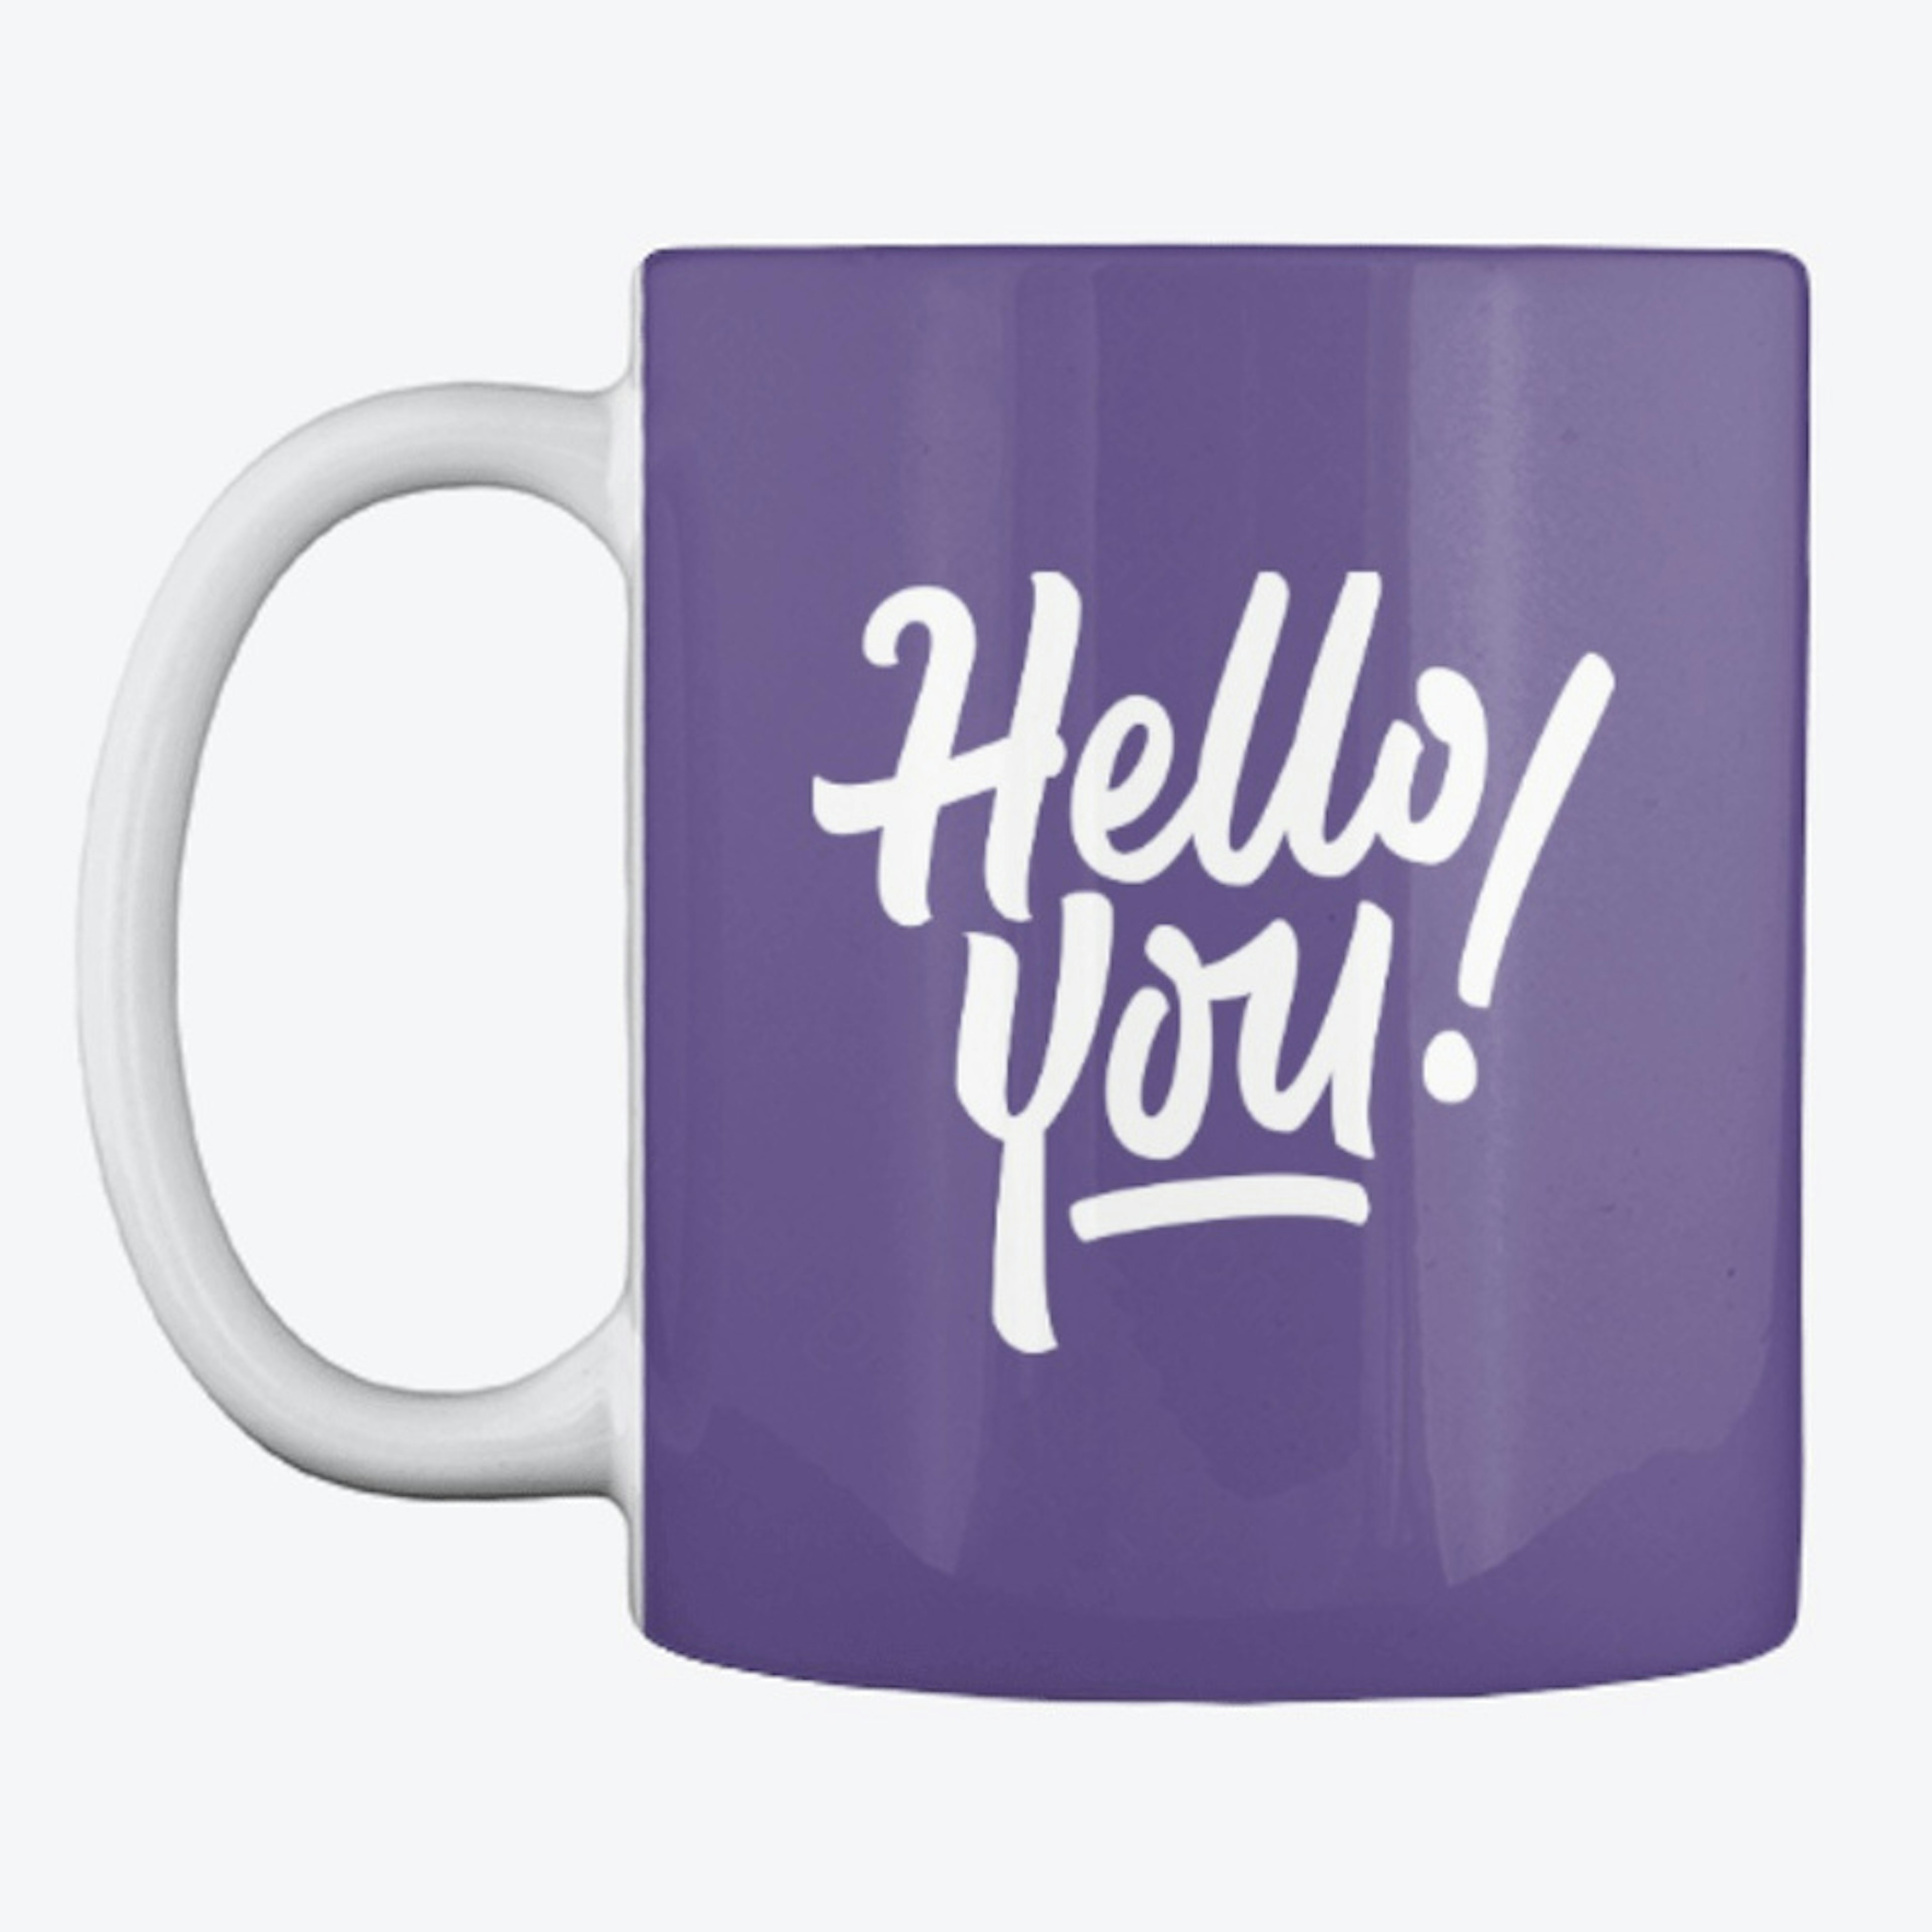 'Hello You!' Mug